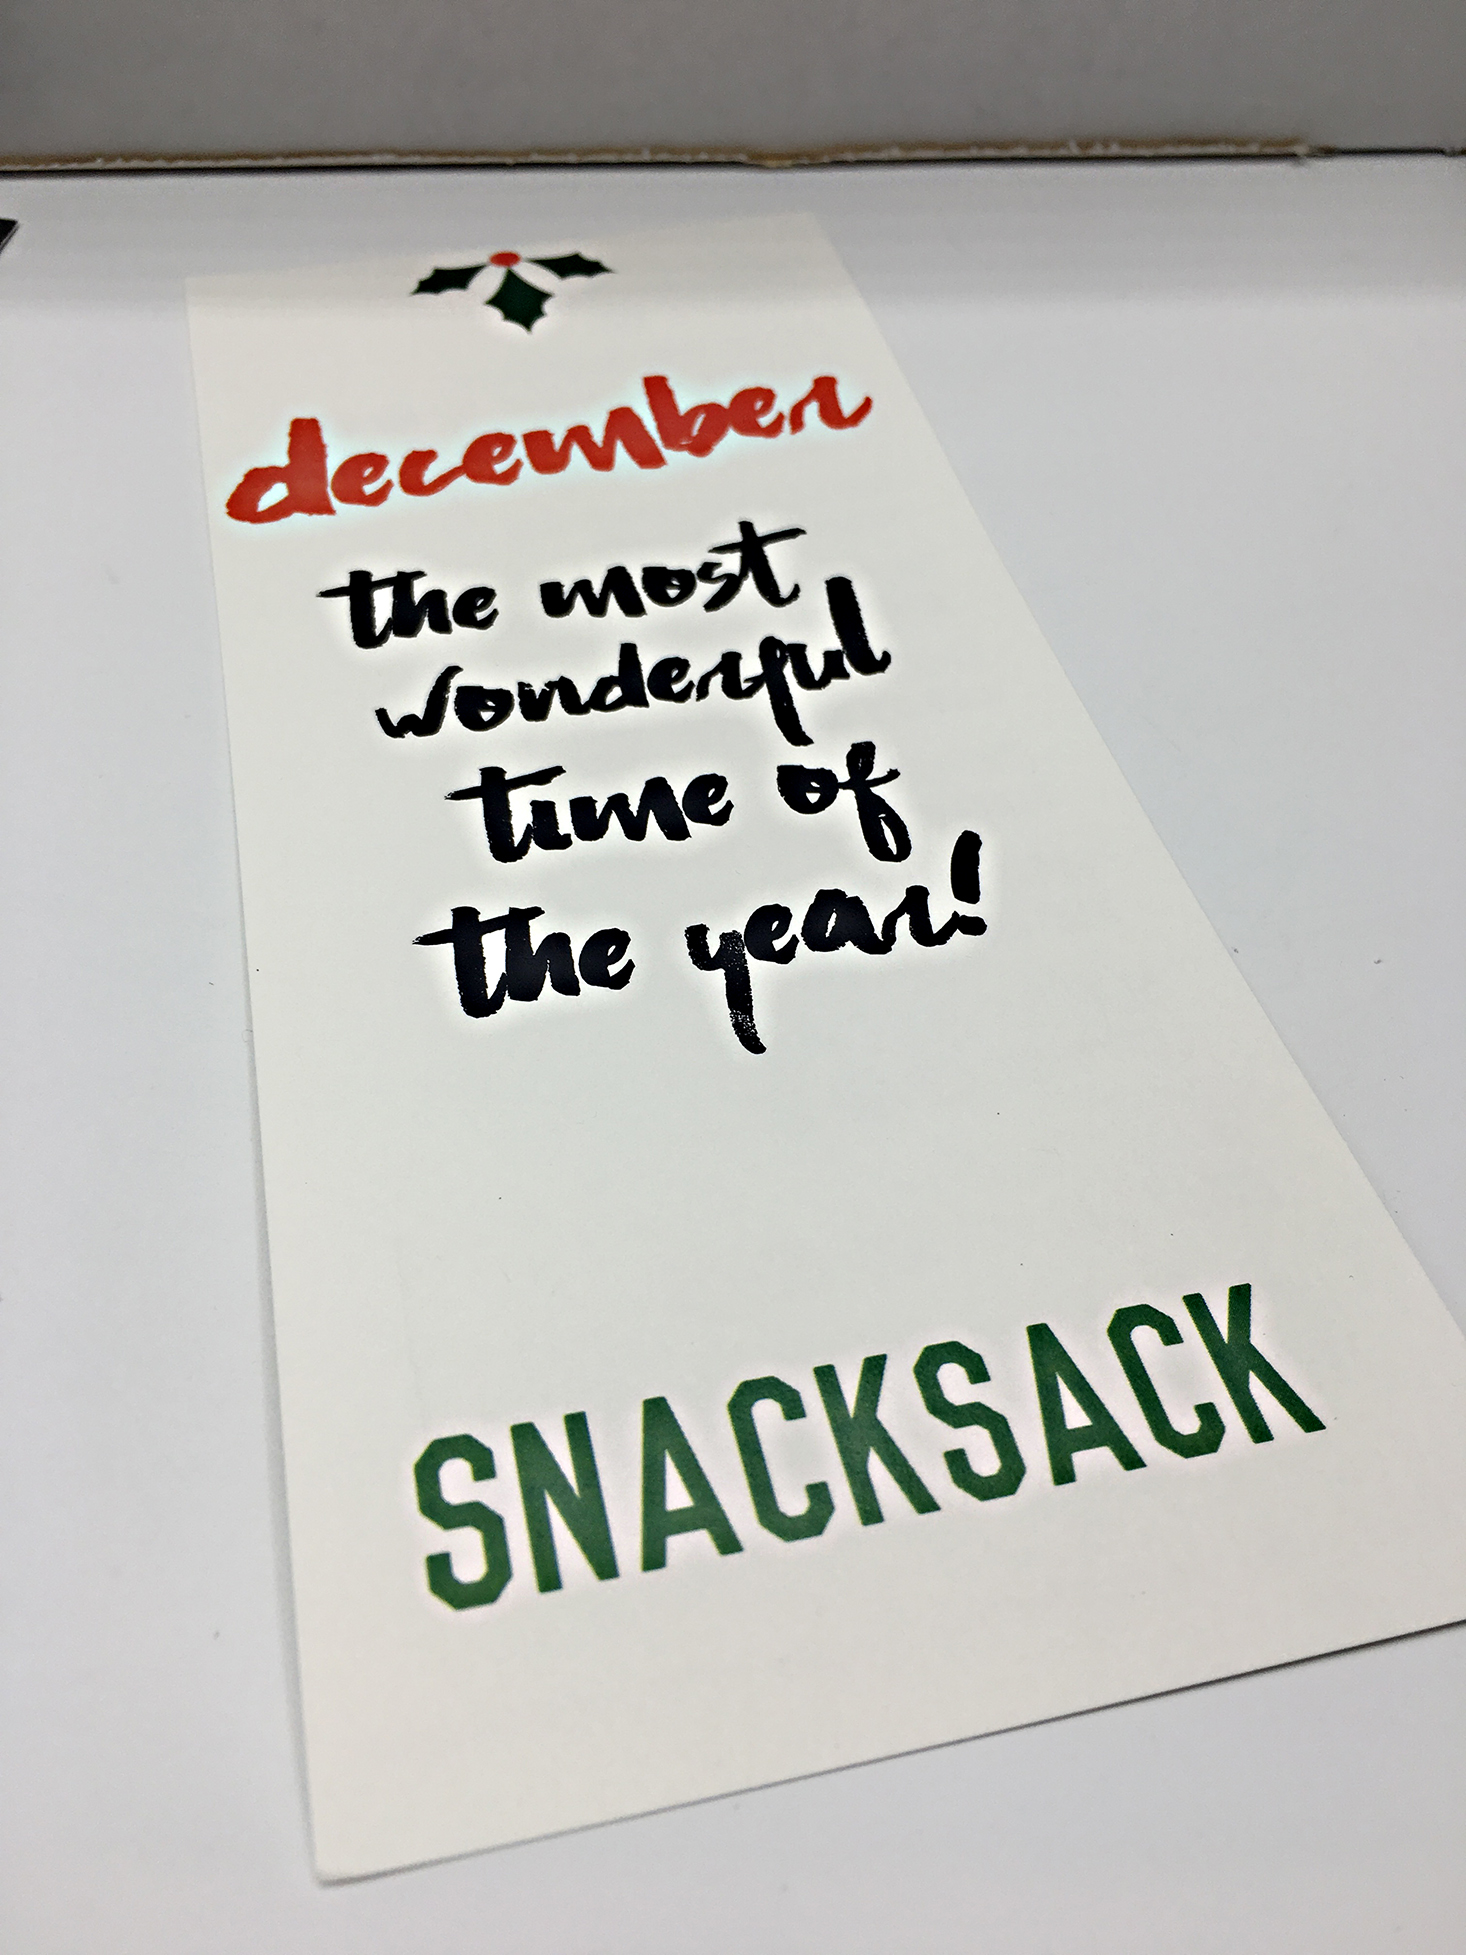 snack-sack-december-2016-front-info-card